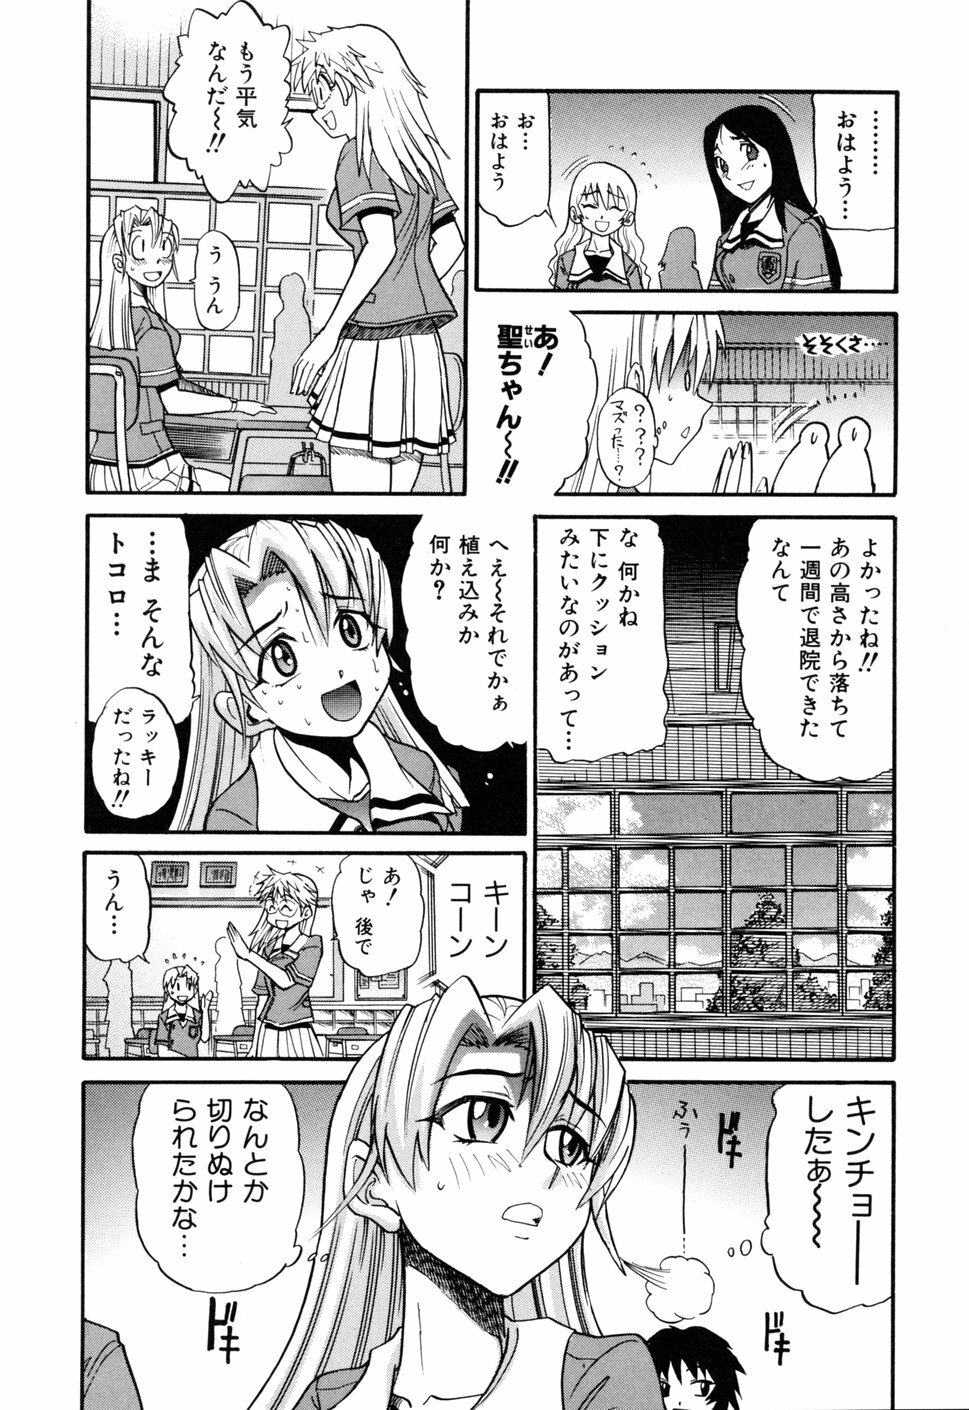 [DISTANCE] Ochiru Tenshi Vol. 1 page 10 full